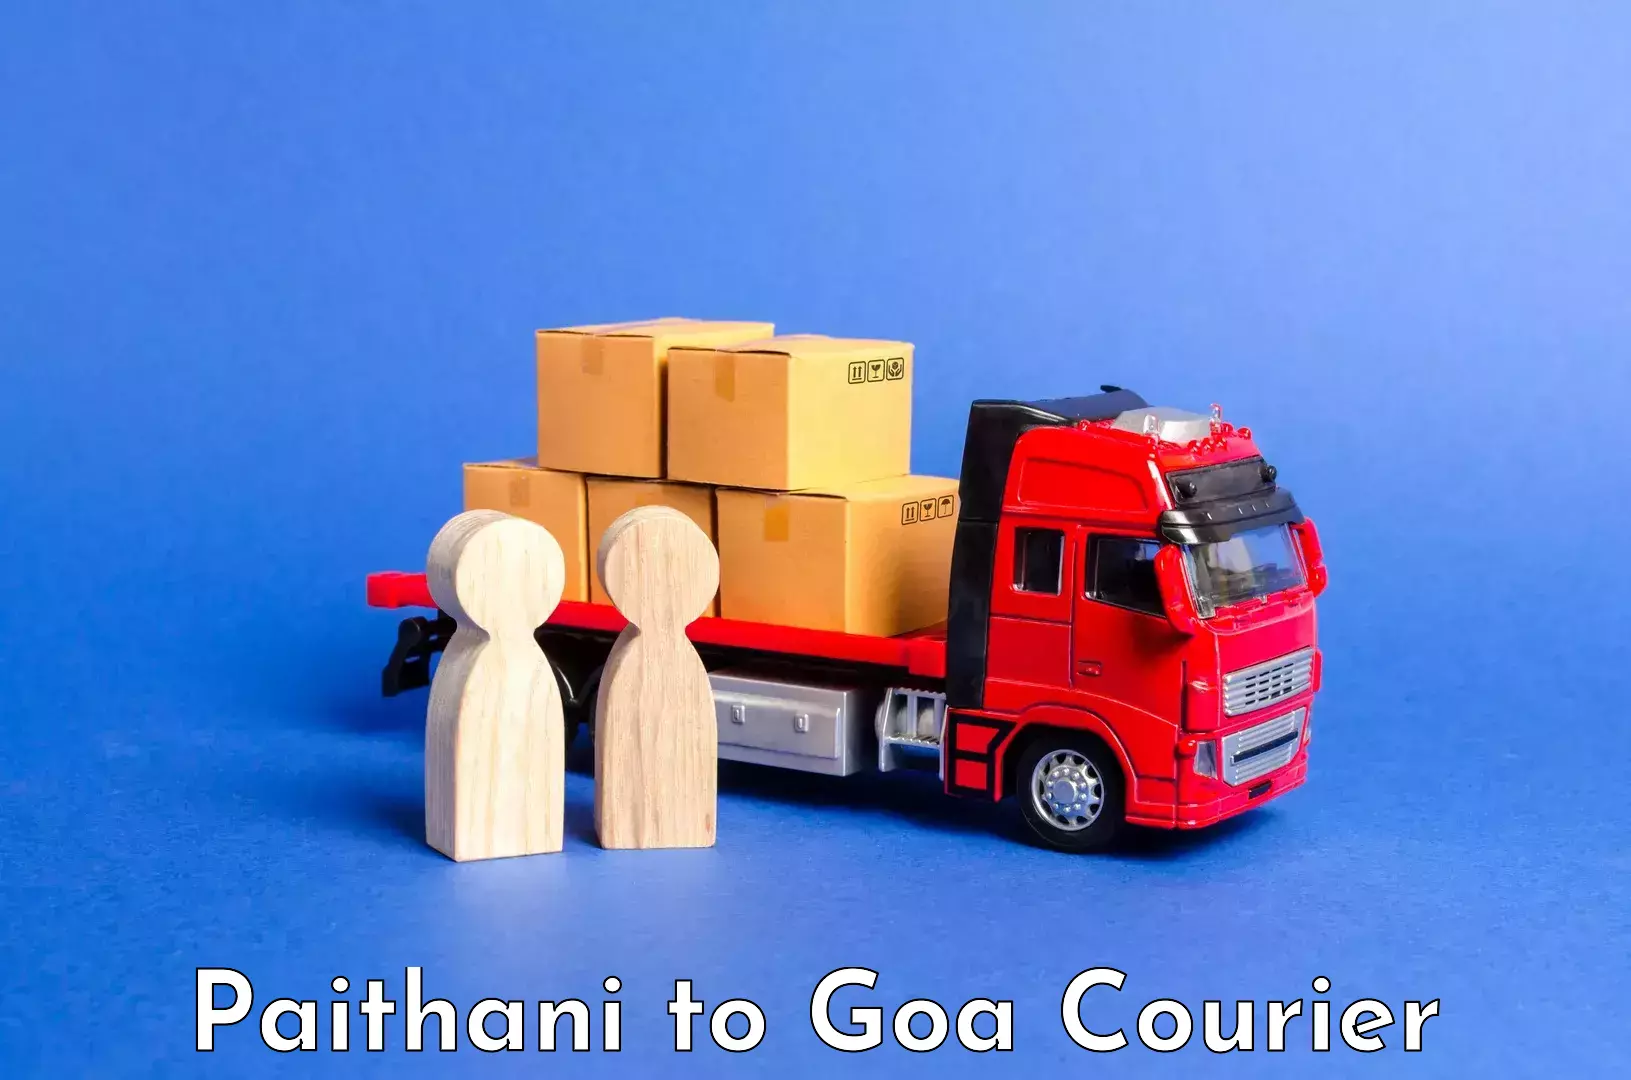 Luggage transport consulting Paithani to Vasco da Gama